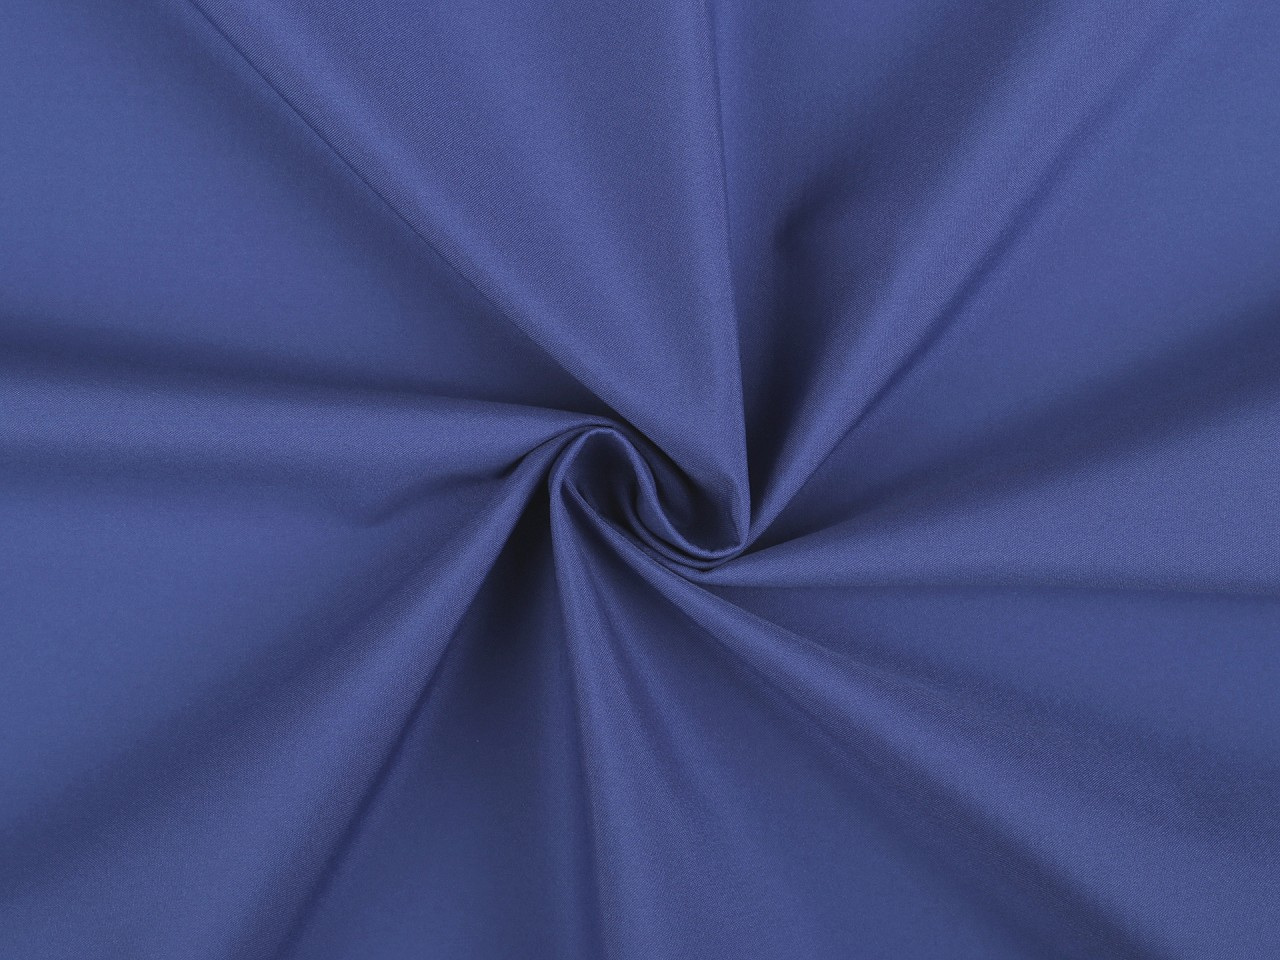 Letní softshell, barva 2 (368) modrá královská